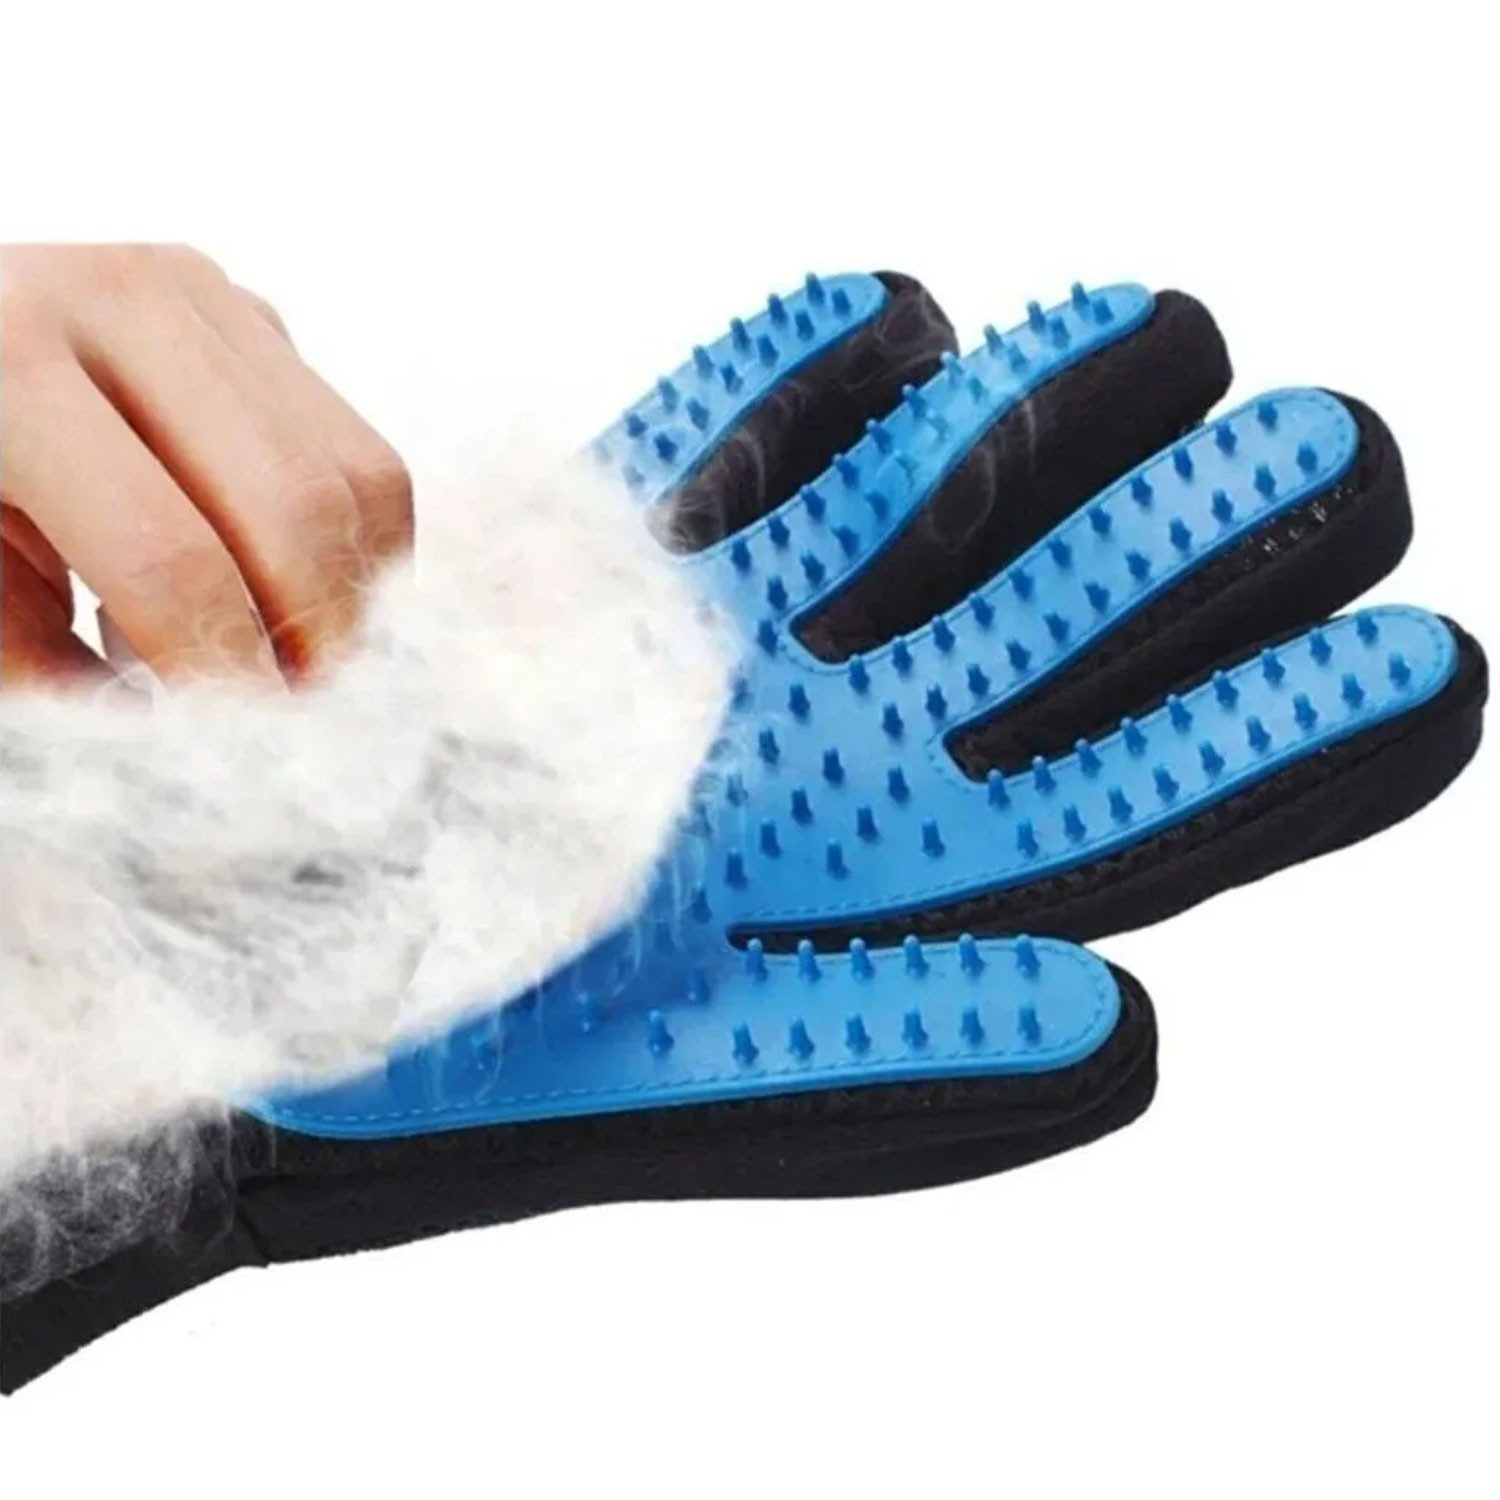 Jungengel Textilien Hundehandtuch Rechtshändiger Handschuh zur Fellpflege für Katzen und Hunde